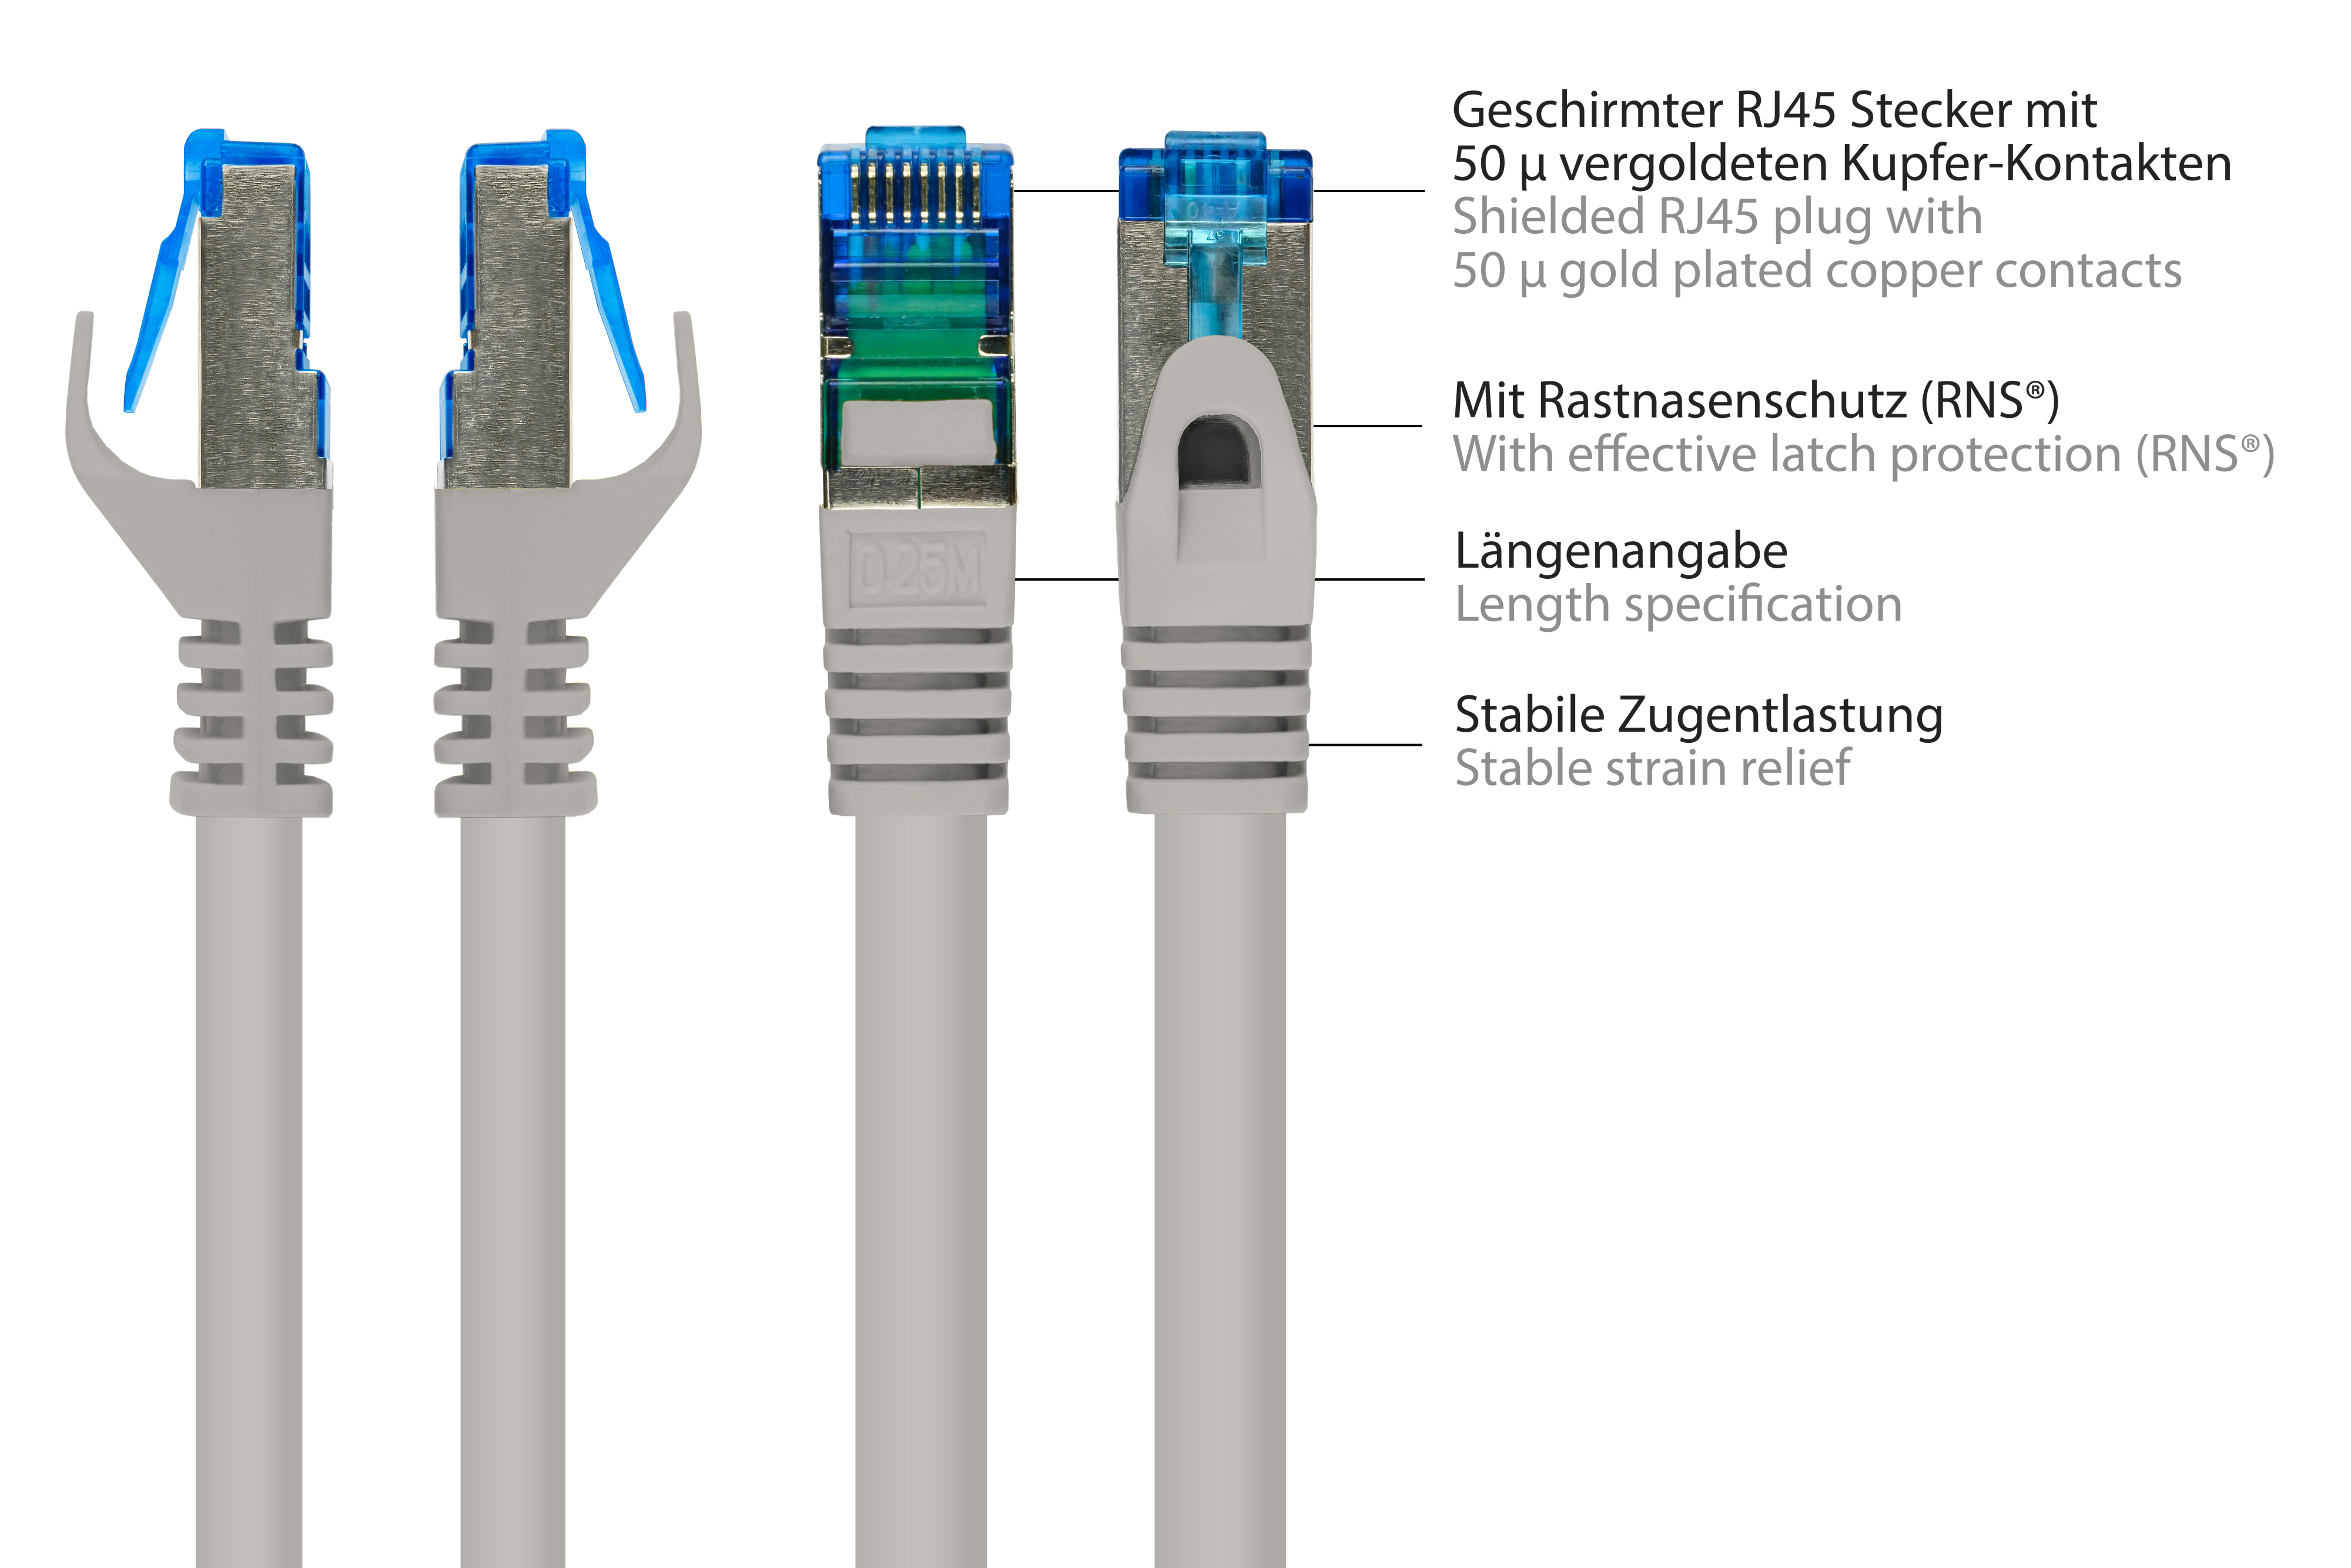 GOOD CONNECTIONS SmartFLEX, S/FTP, PiMF, 500MHz, m halogenfrei, Netzwerkkabel, schwarz, 30